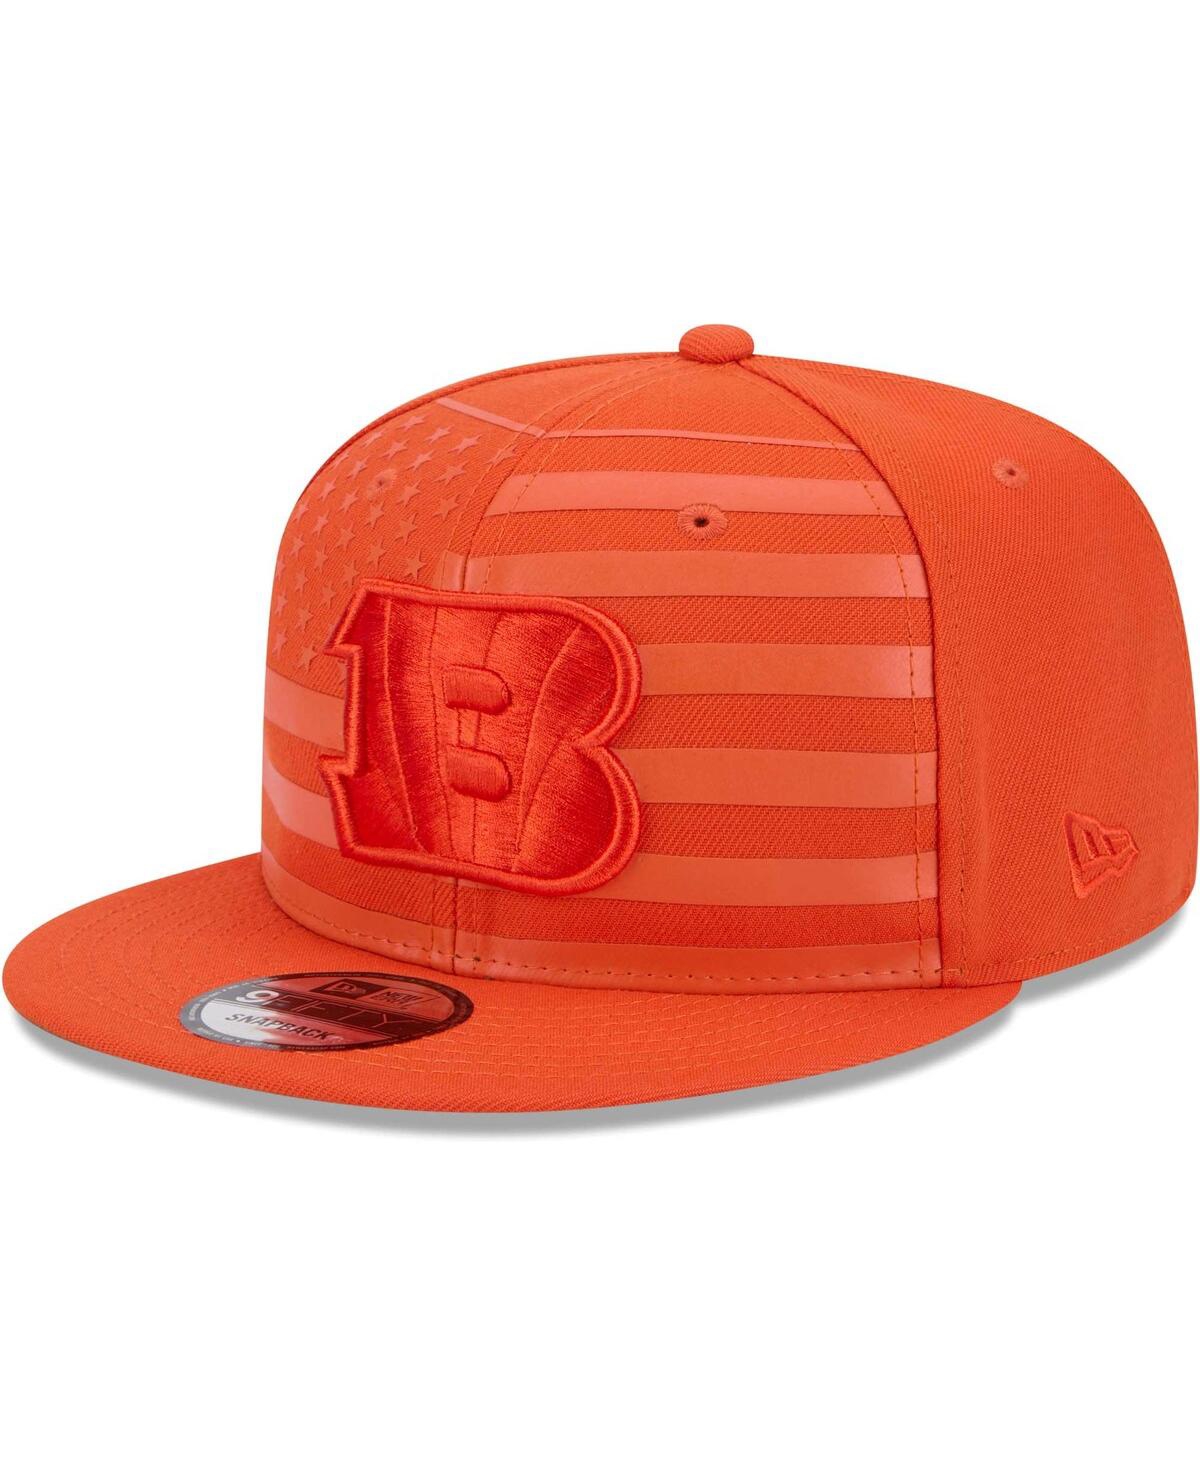 Shop New Era Men's Orange Cincinnati Bengals Independent 9fifty Snapback Hat